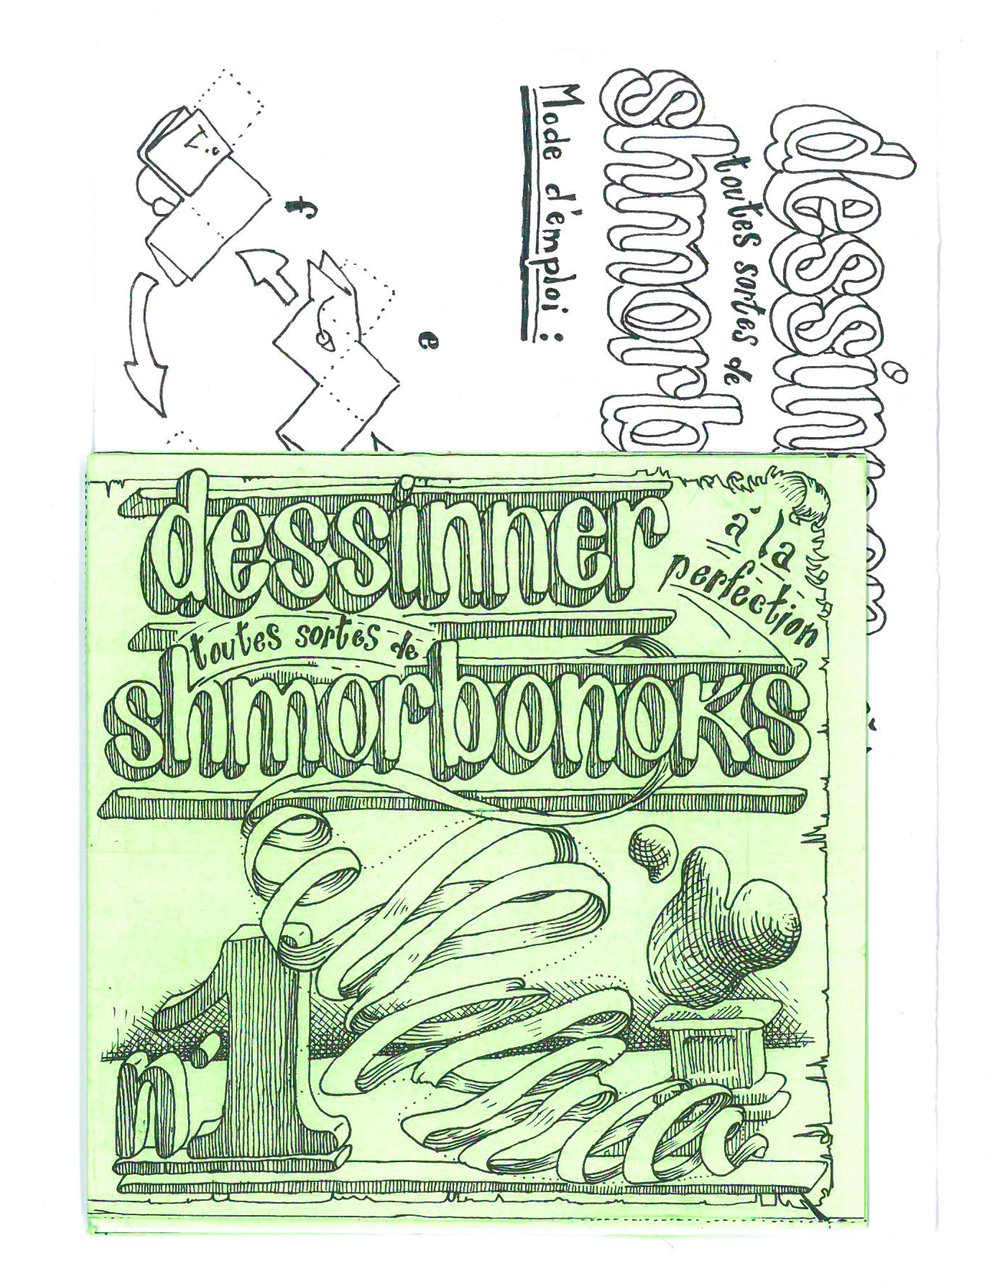 Comment dessiner à la perfection toutes sortes de Shmorbonoks